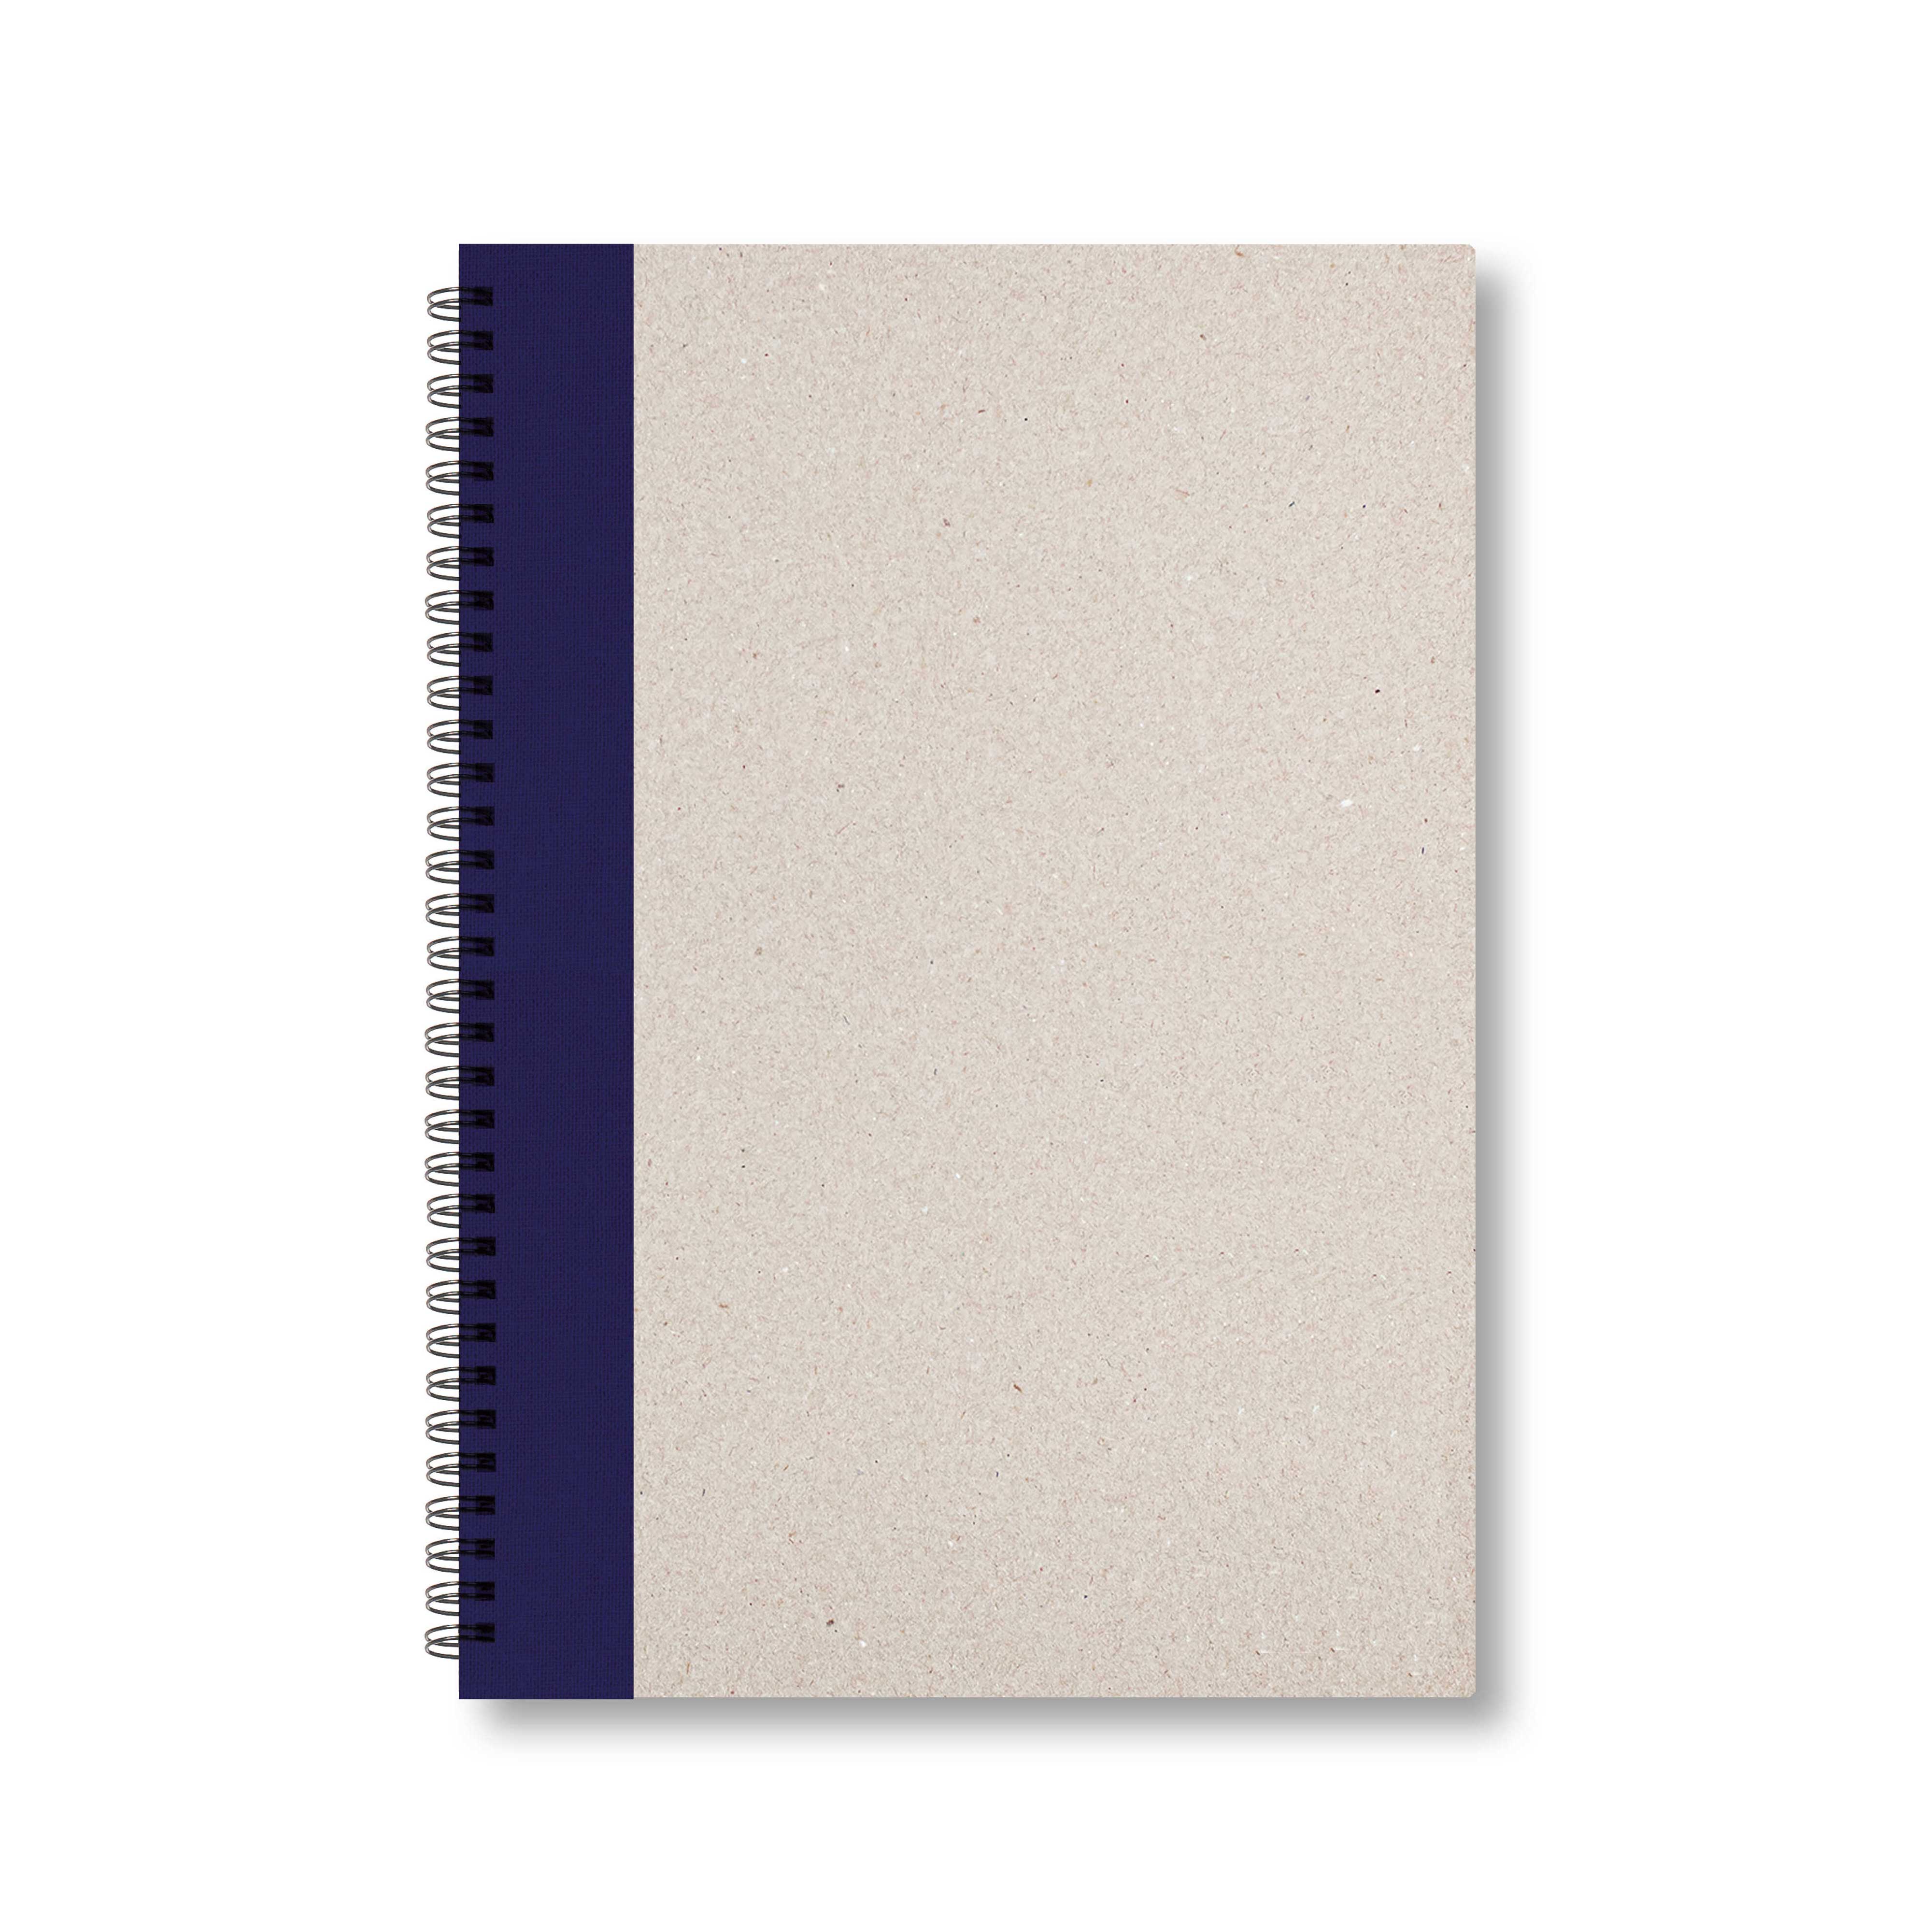 BOBO Zápisník, B5, linkovaný, tmavě modrý, konfiguruj si obálku